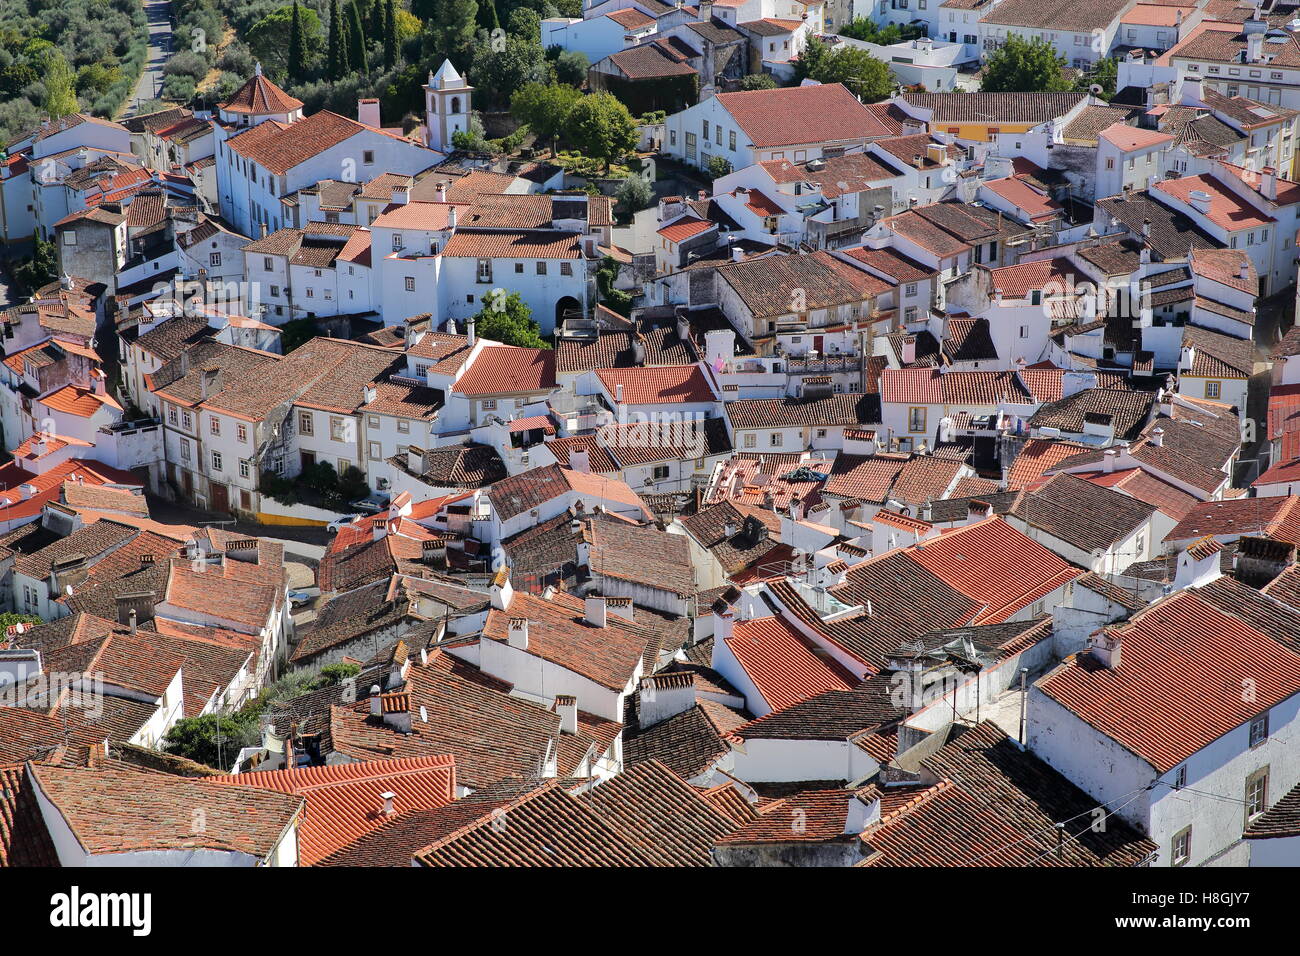 CASTELO DE VIDE, PORTUGAL : vue sur la vieille ville avec ses maisons blanchies à la chaux et les toits du château médiéval Banque D'Images